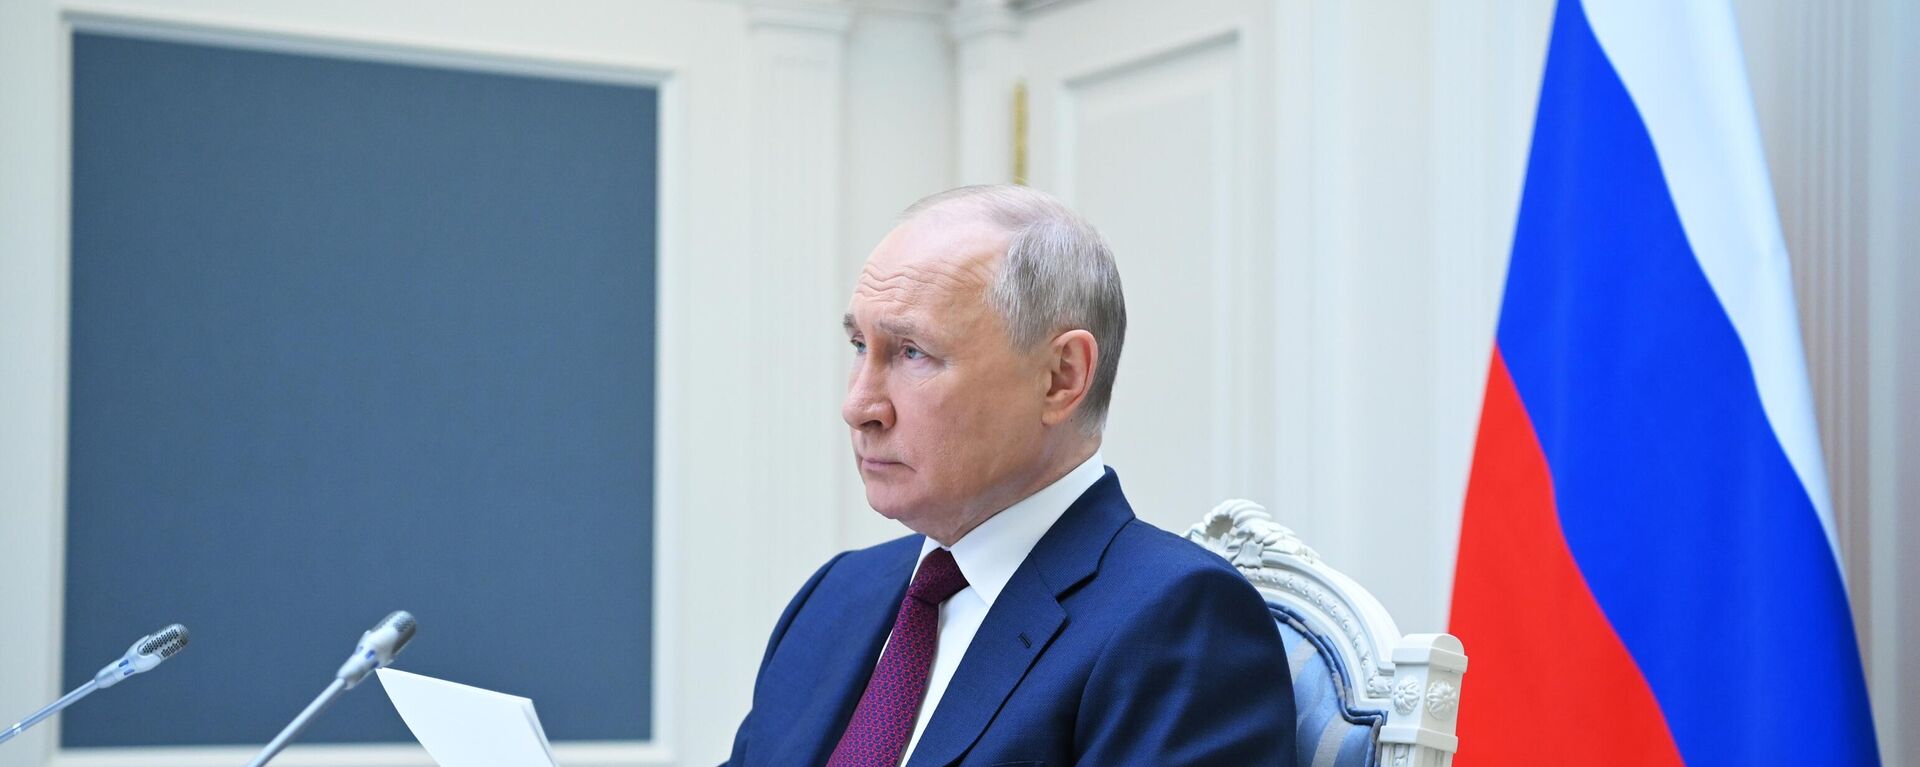 Vladimir Putin takes part in SCO meeting - Sputnik International, 1920, 23.07.2023